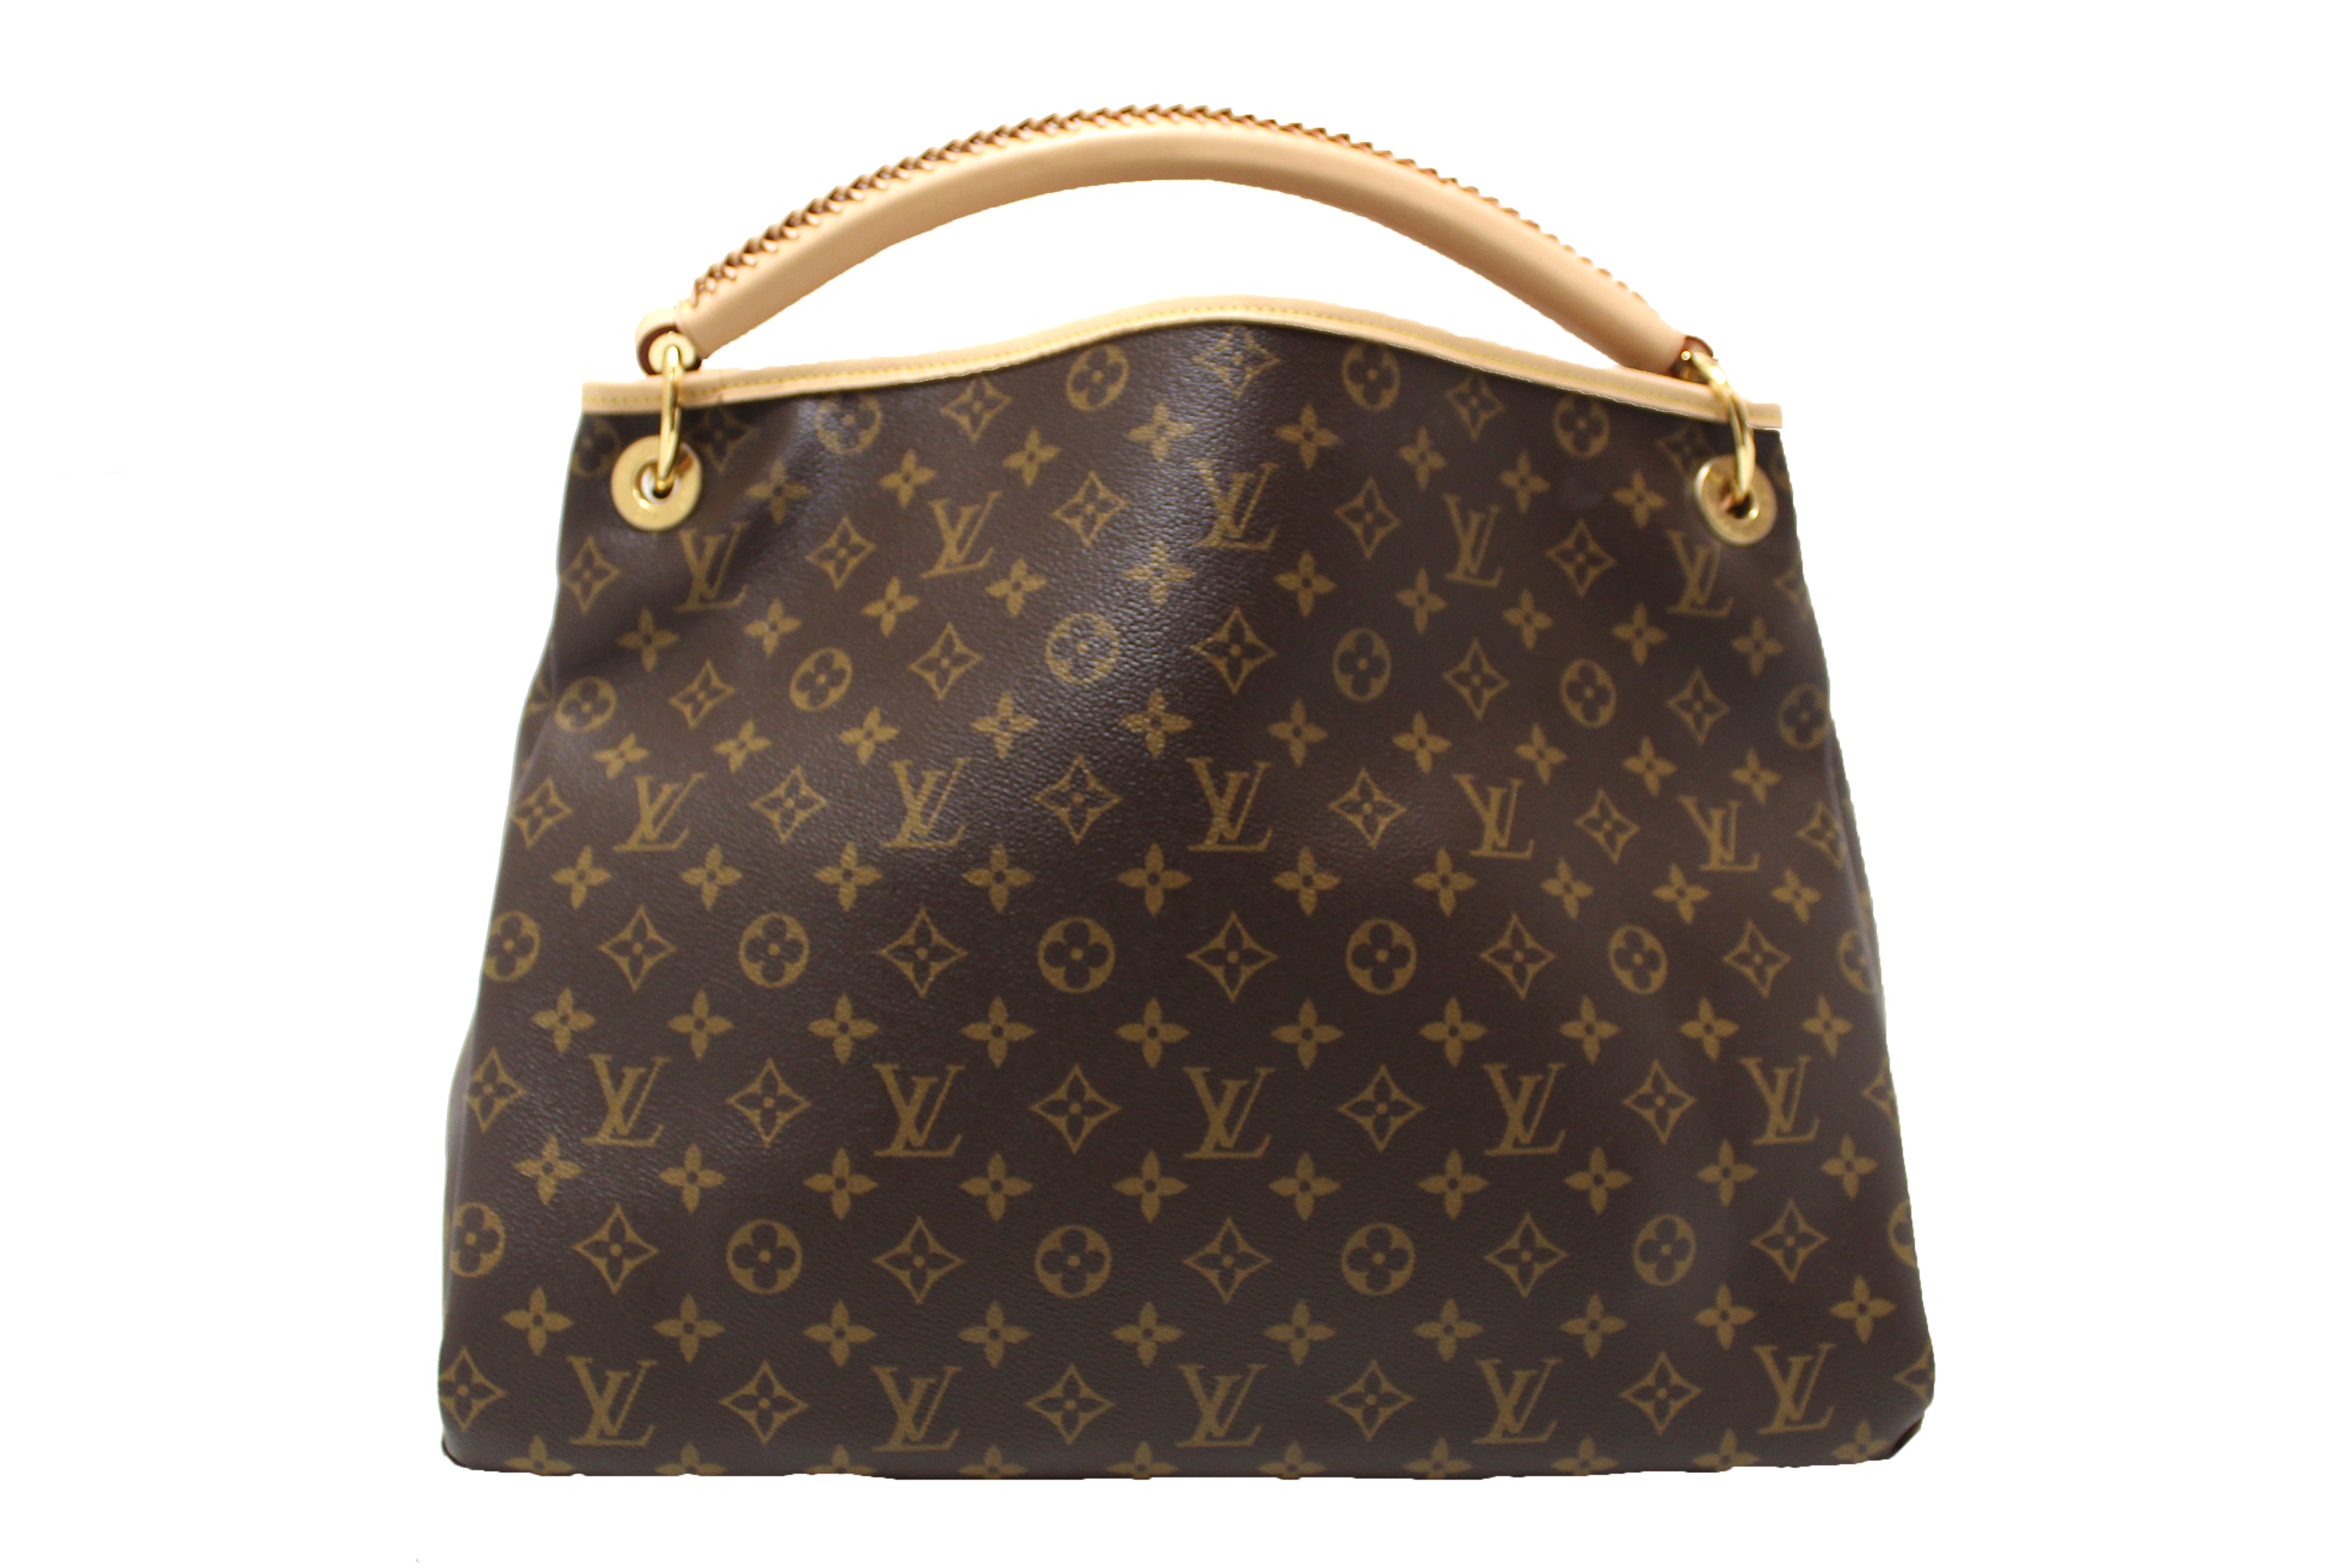 NEW Authentic Louis Vuitton Classic Monogram Canvas Artsy MM Shoulder Bag